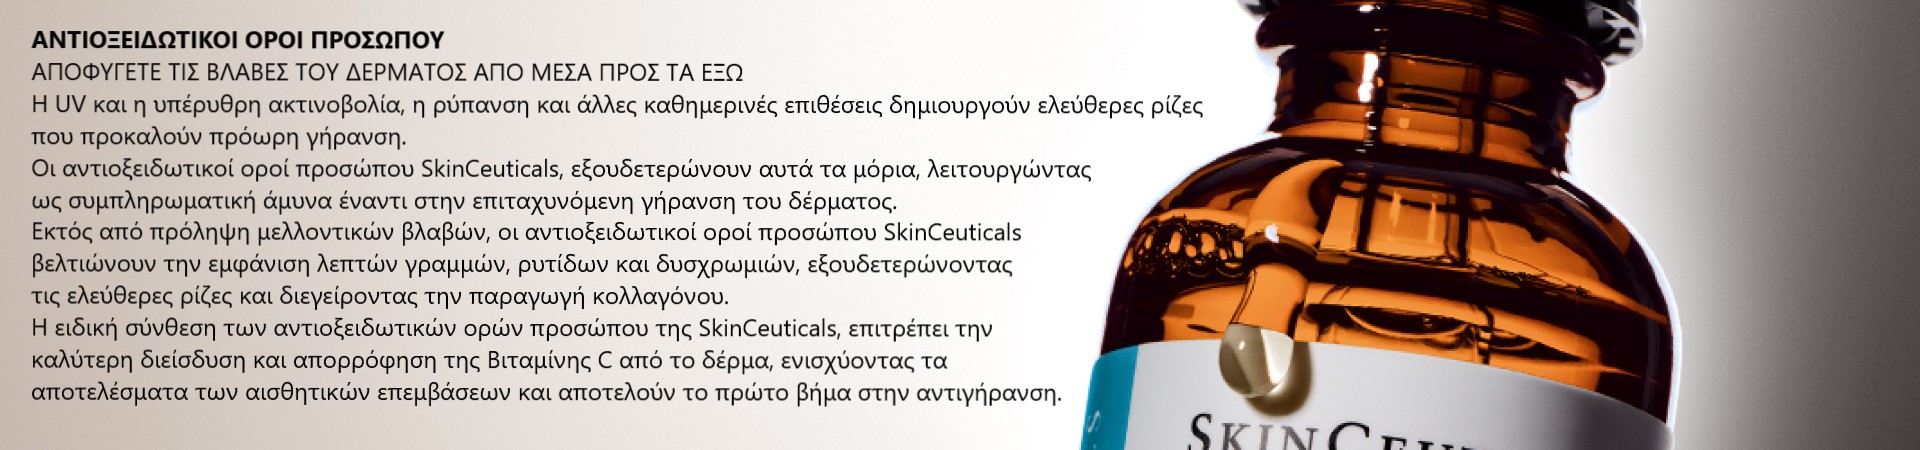 SkinCeuticals - Πρόληψη